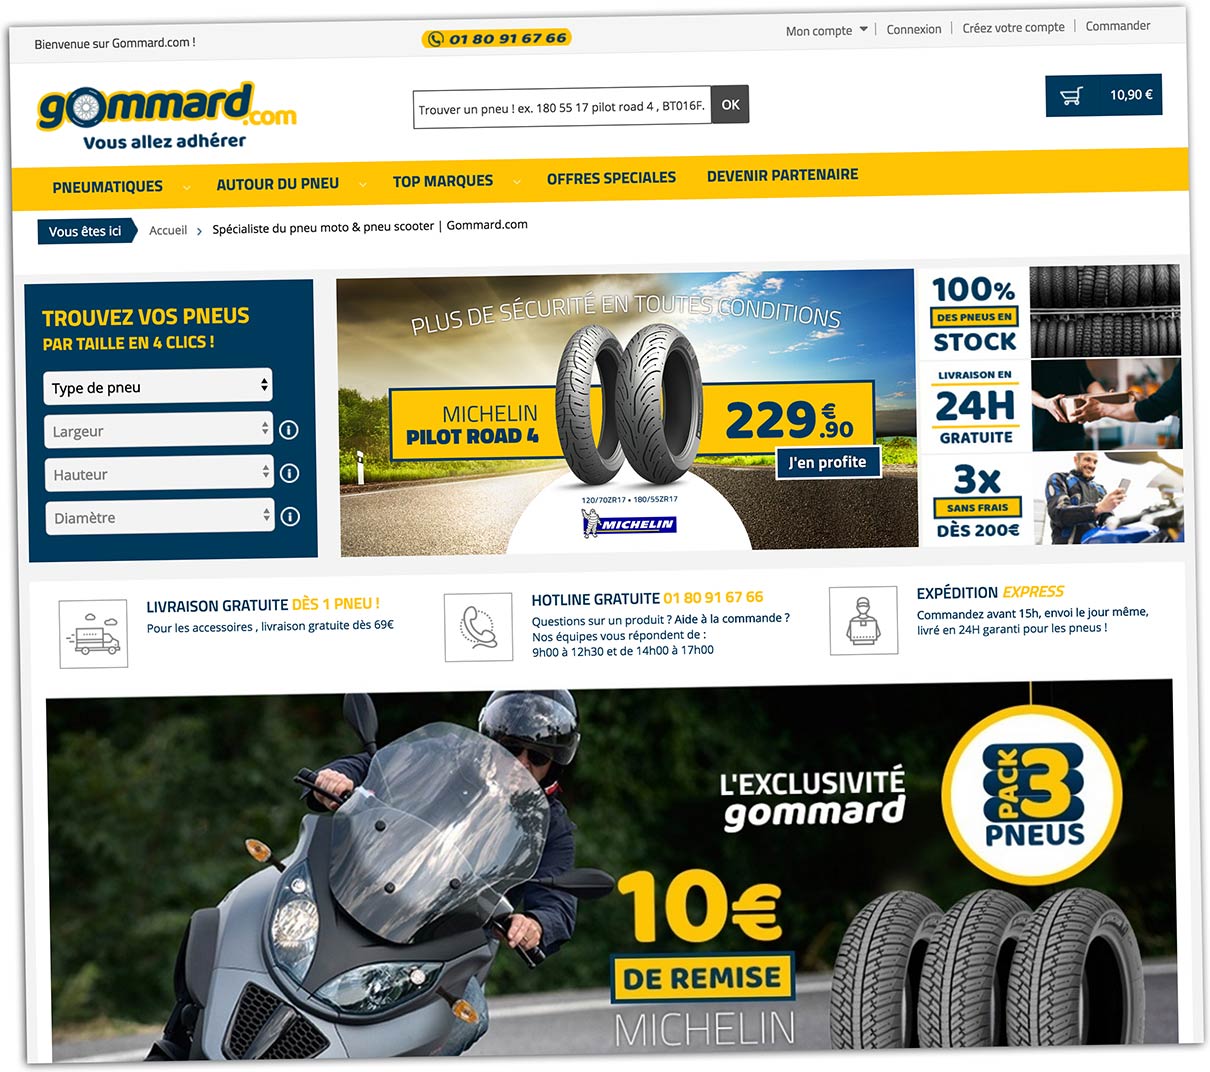 Gommard.com promet que « vous allez adhérer » à son sélecteur de pneus !